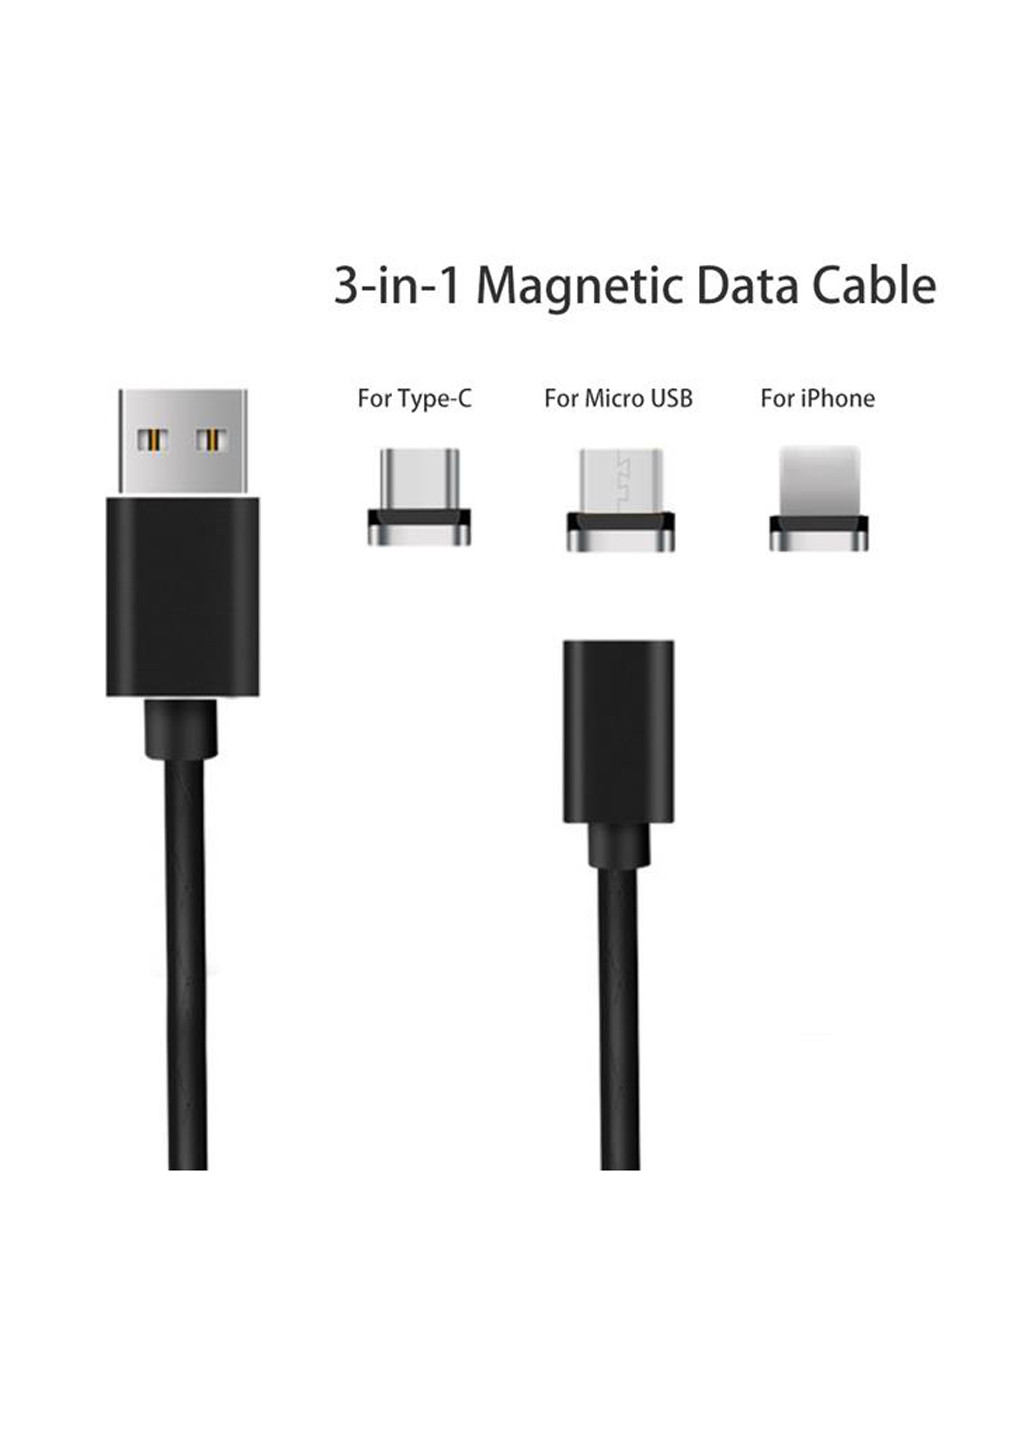 Магнитный кабель USB SC-360 Magneto Leather Black 3 в 1 - Lightning, Micro USB, Type-C 1 м (SC-360MGNT-BK) XoKo sc-360 магнитный кабель k 3 в 1- lightning, micro usb, type-c 1 м (132572840)